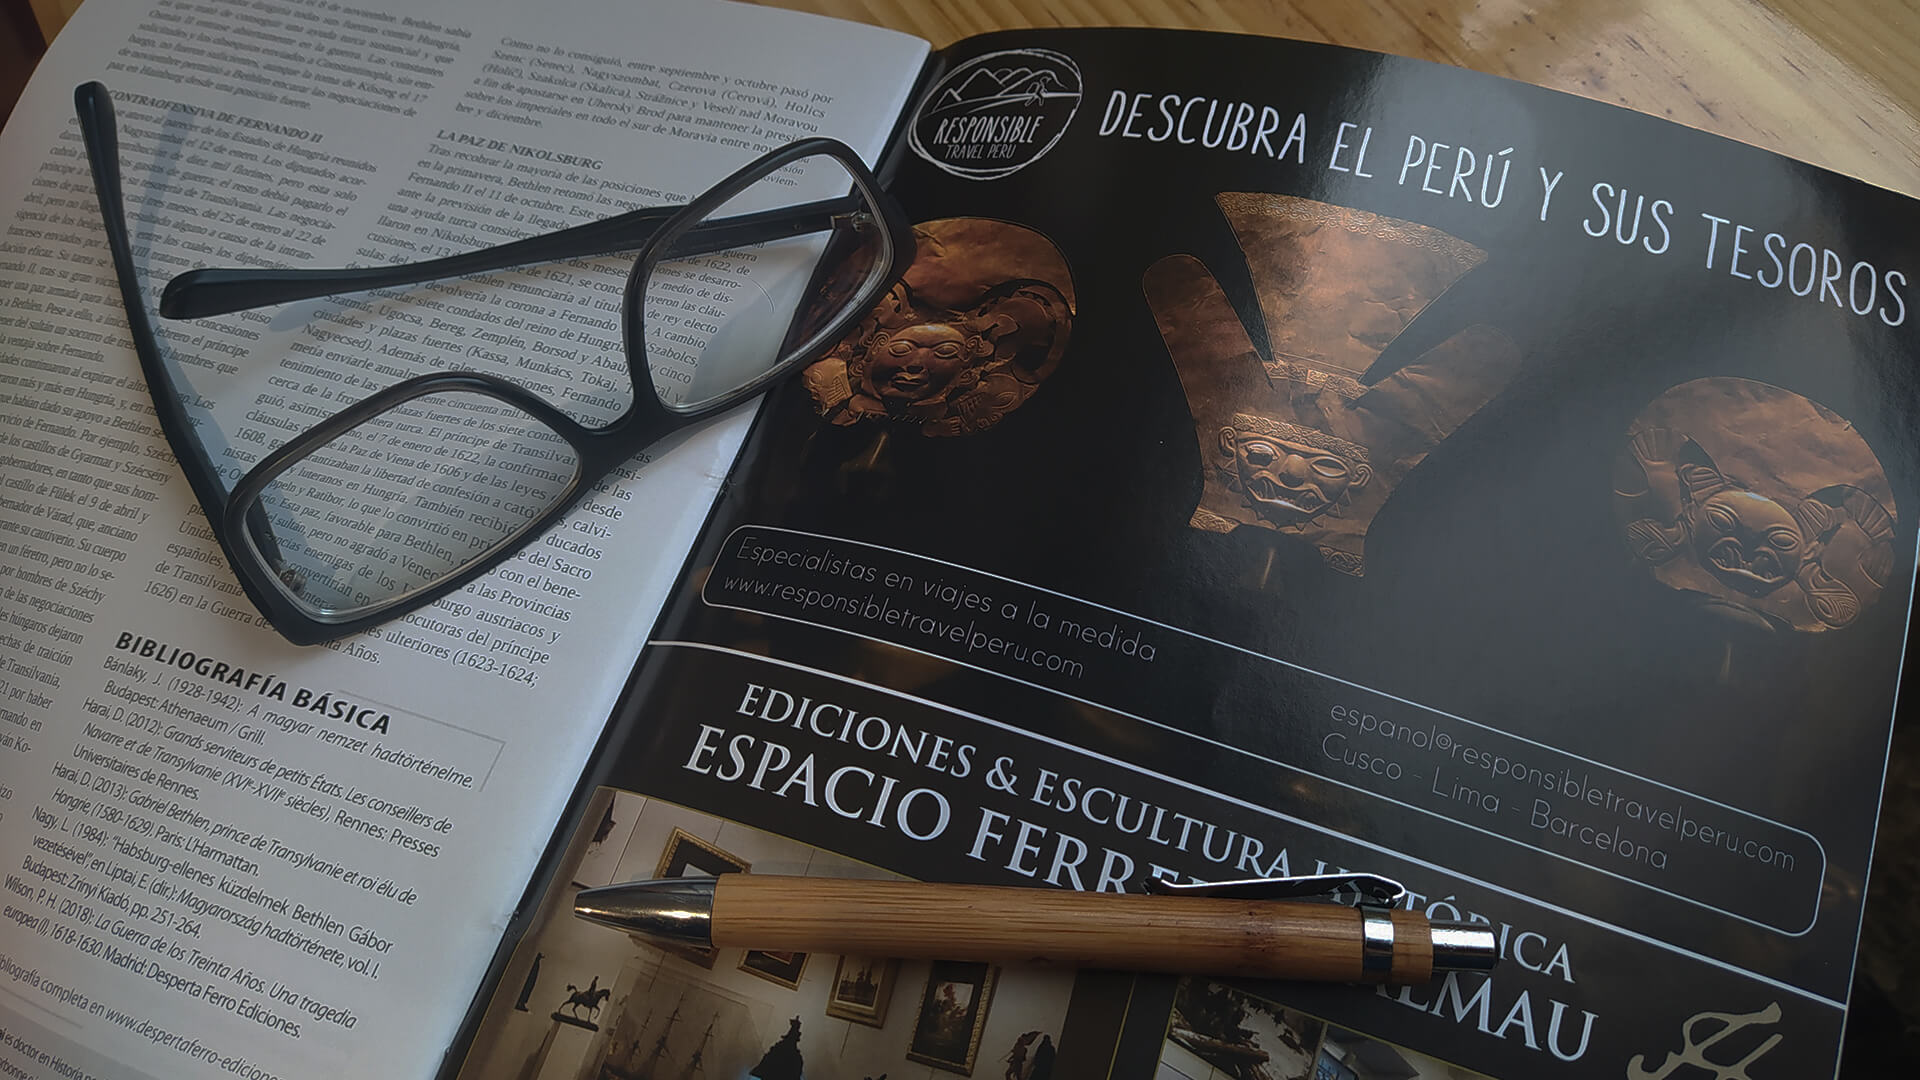 11Respons advertising on magazine in Spanish language | RESPONSible Travel Peru